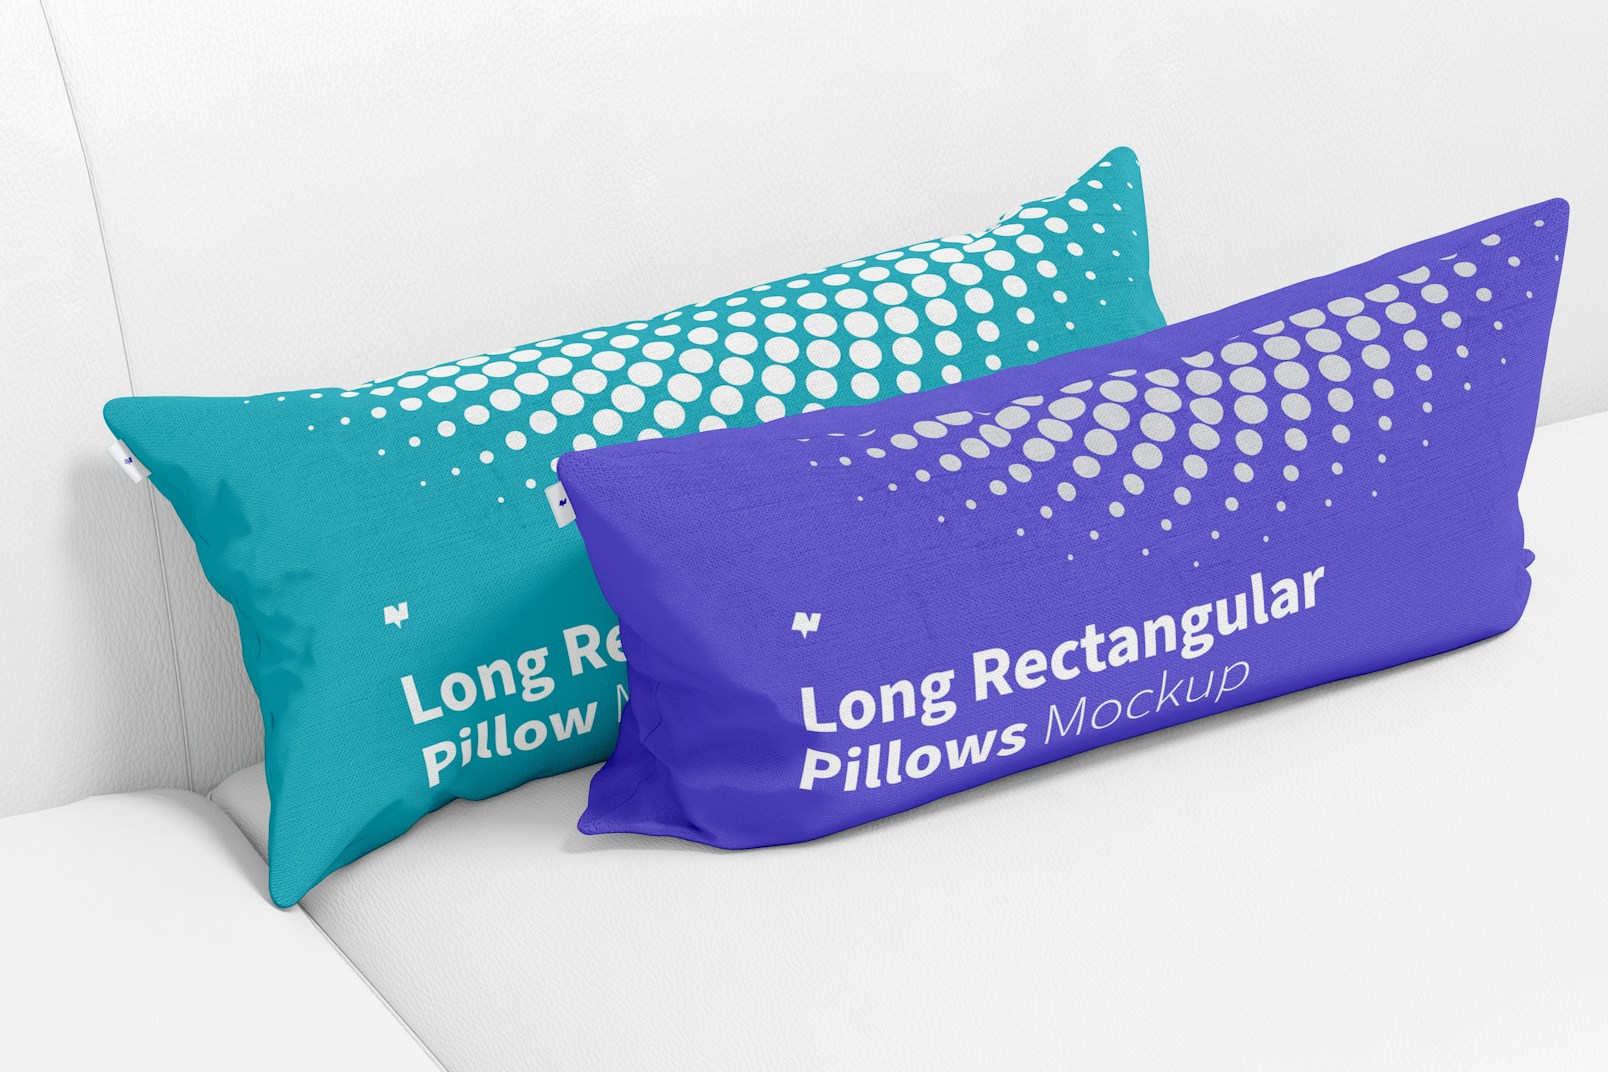 Long Rectangular Pillows Mockup, Leaned